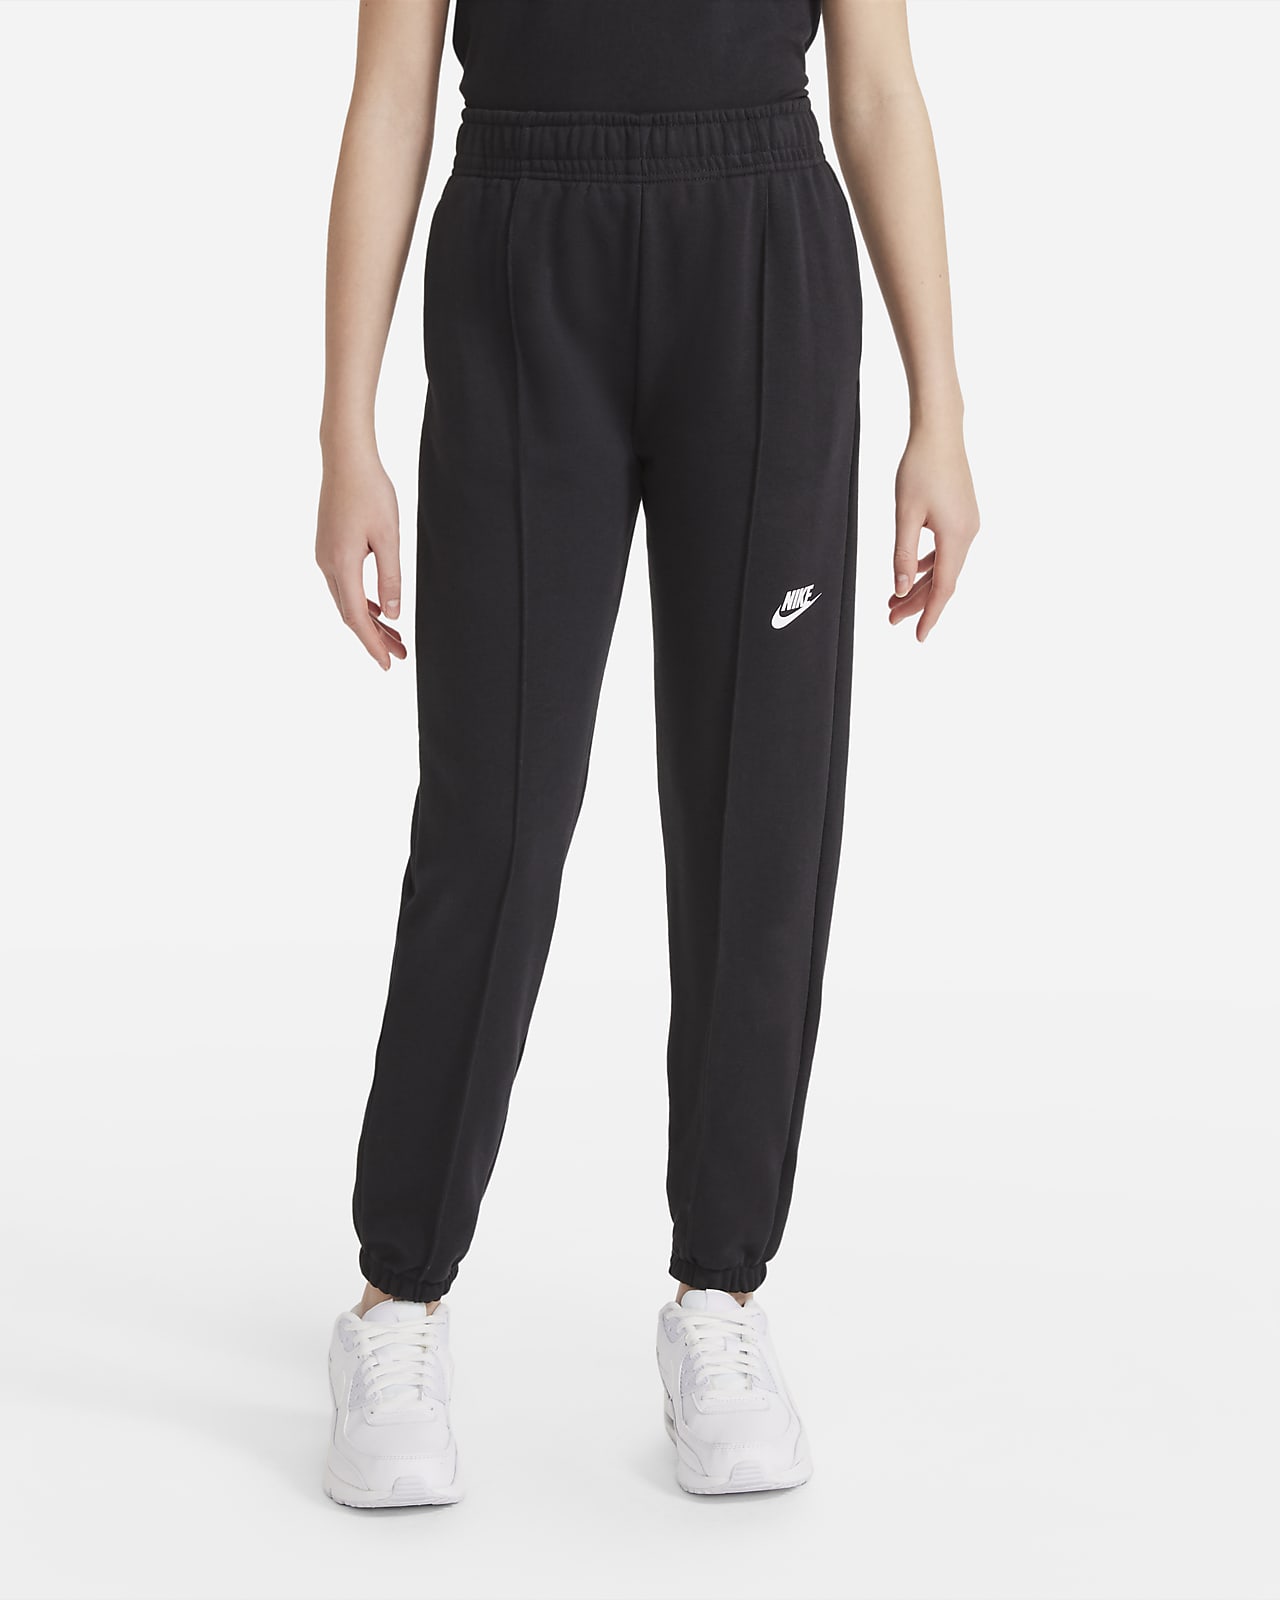 Nike sportswear womens oversized fleece dance pants  pants  Leisure   Buy online